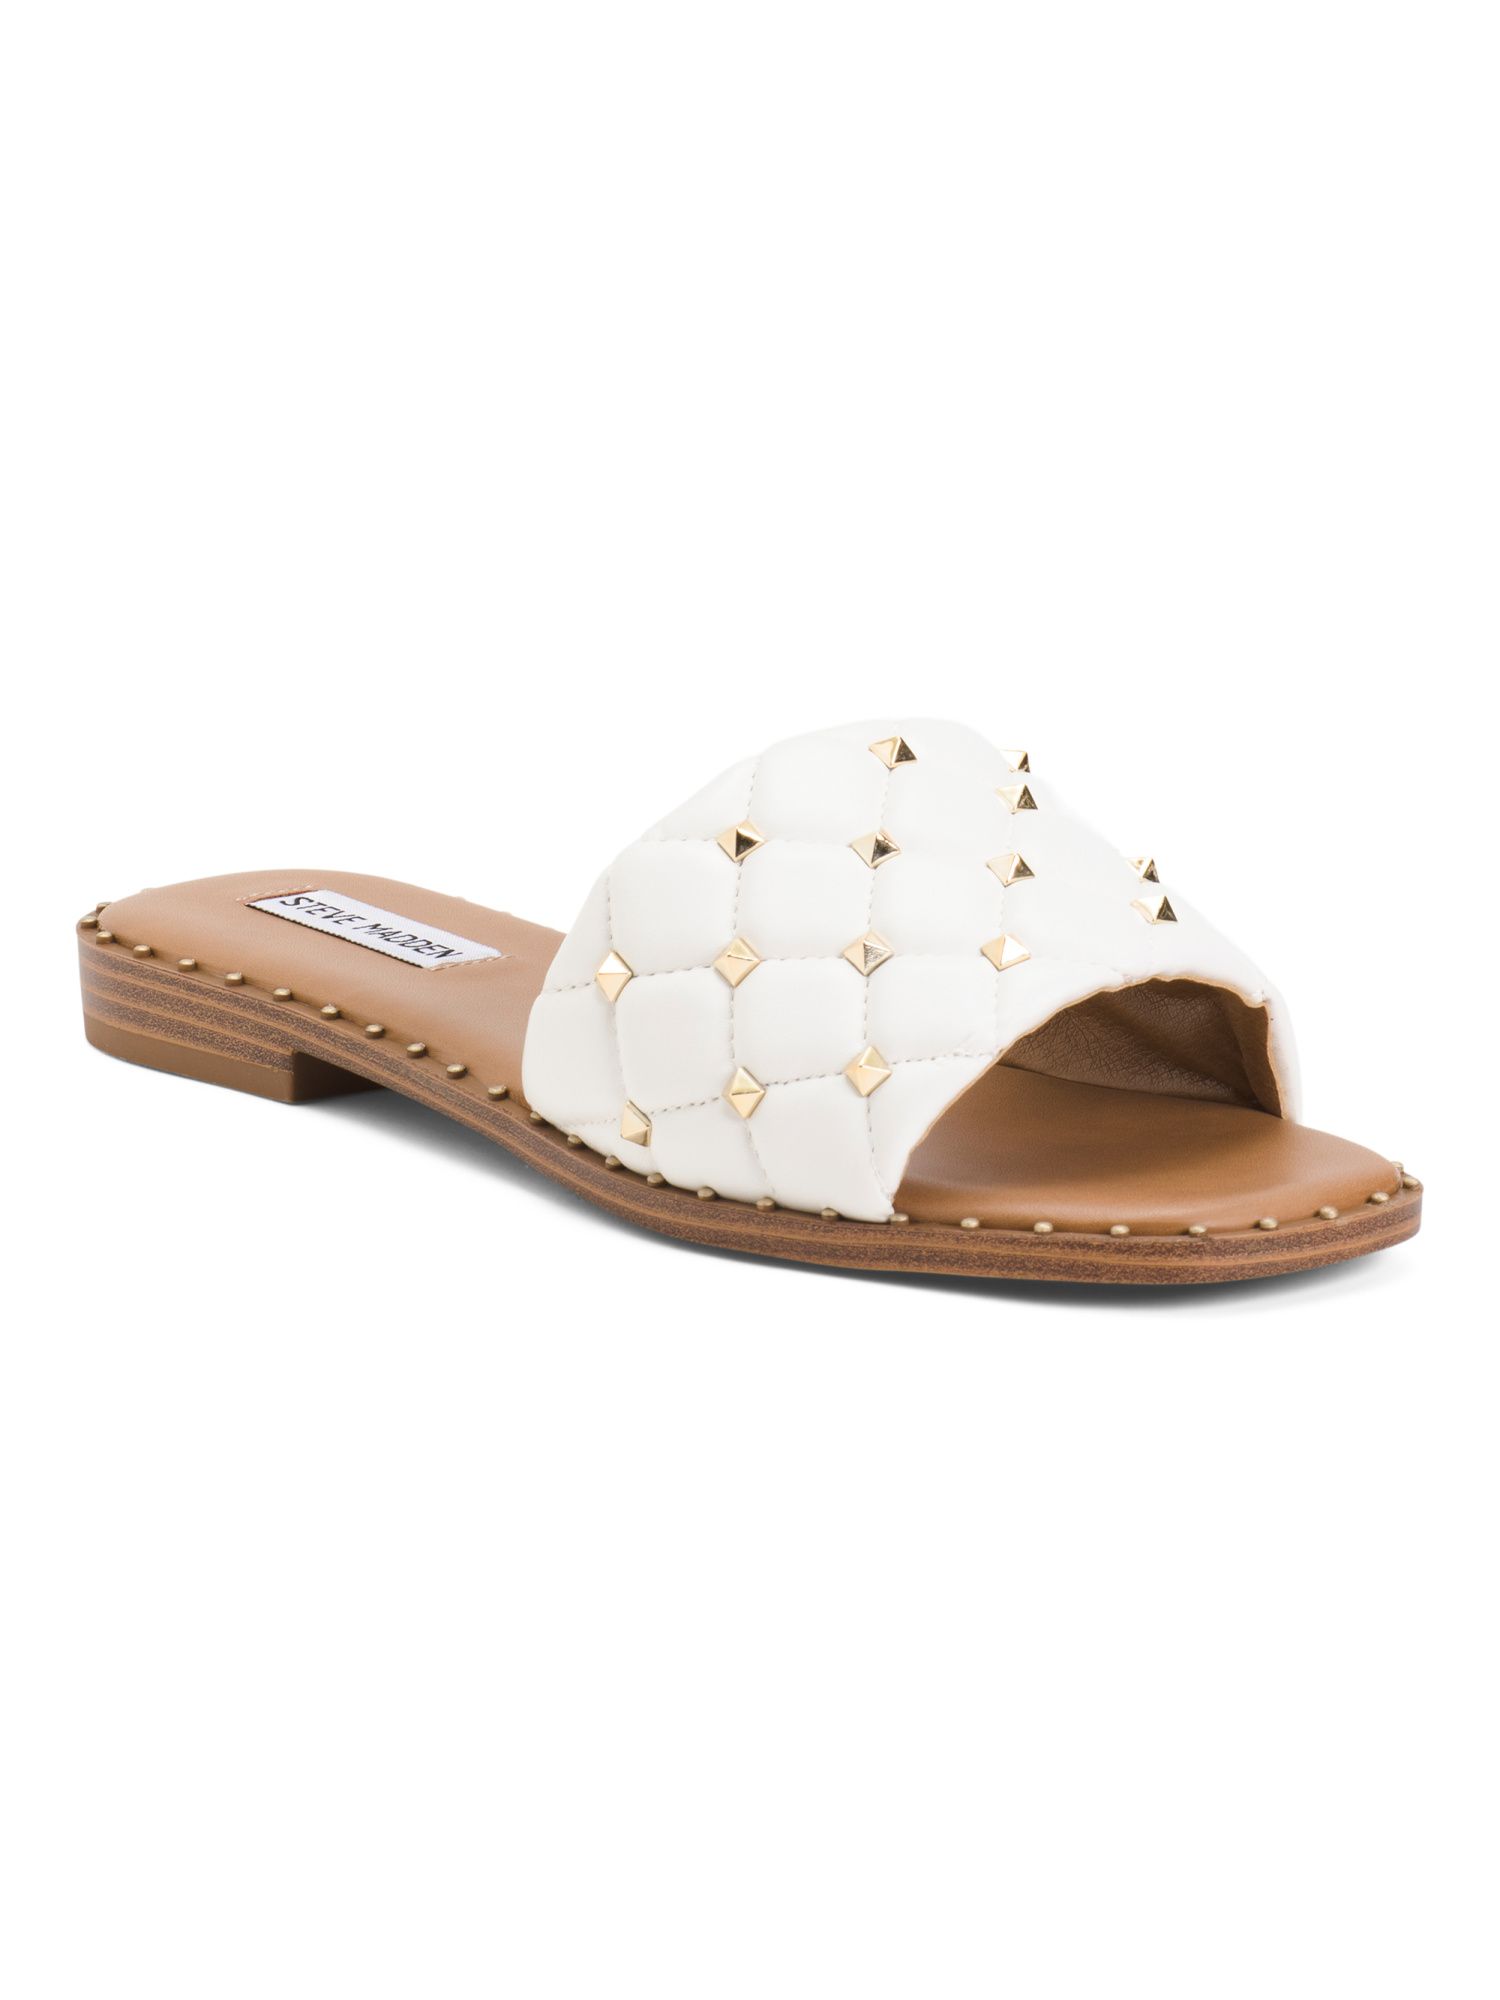 Padded Studded Flat Sandals | TJ Maxx